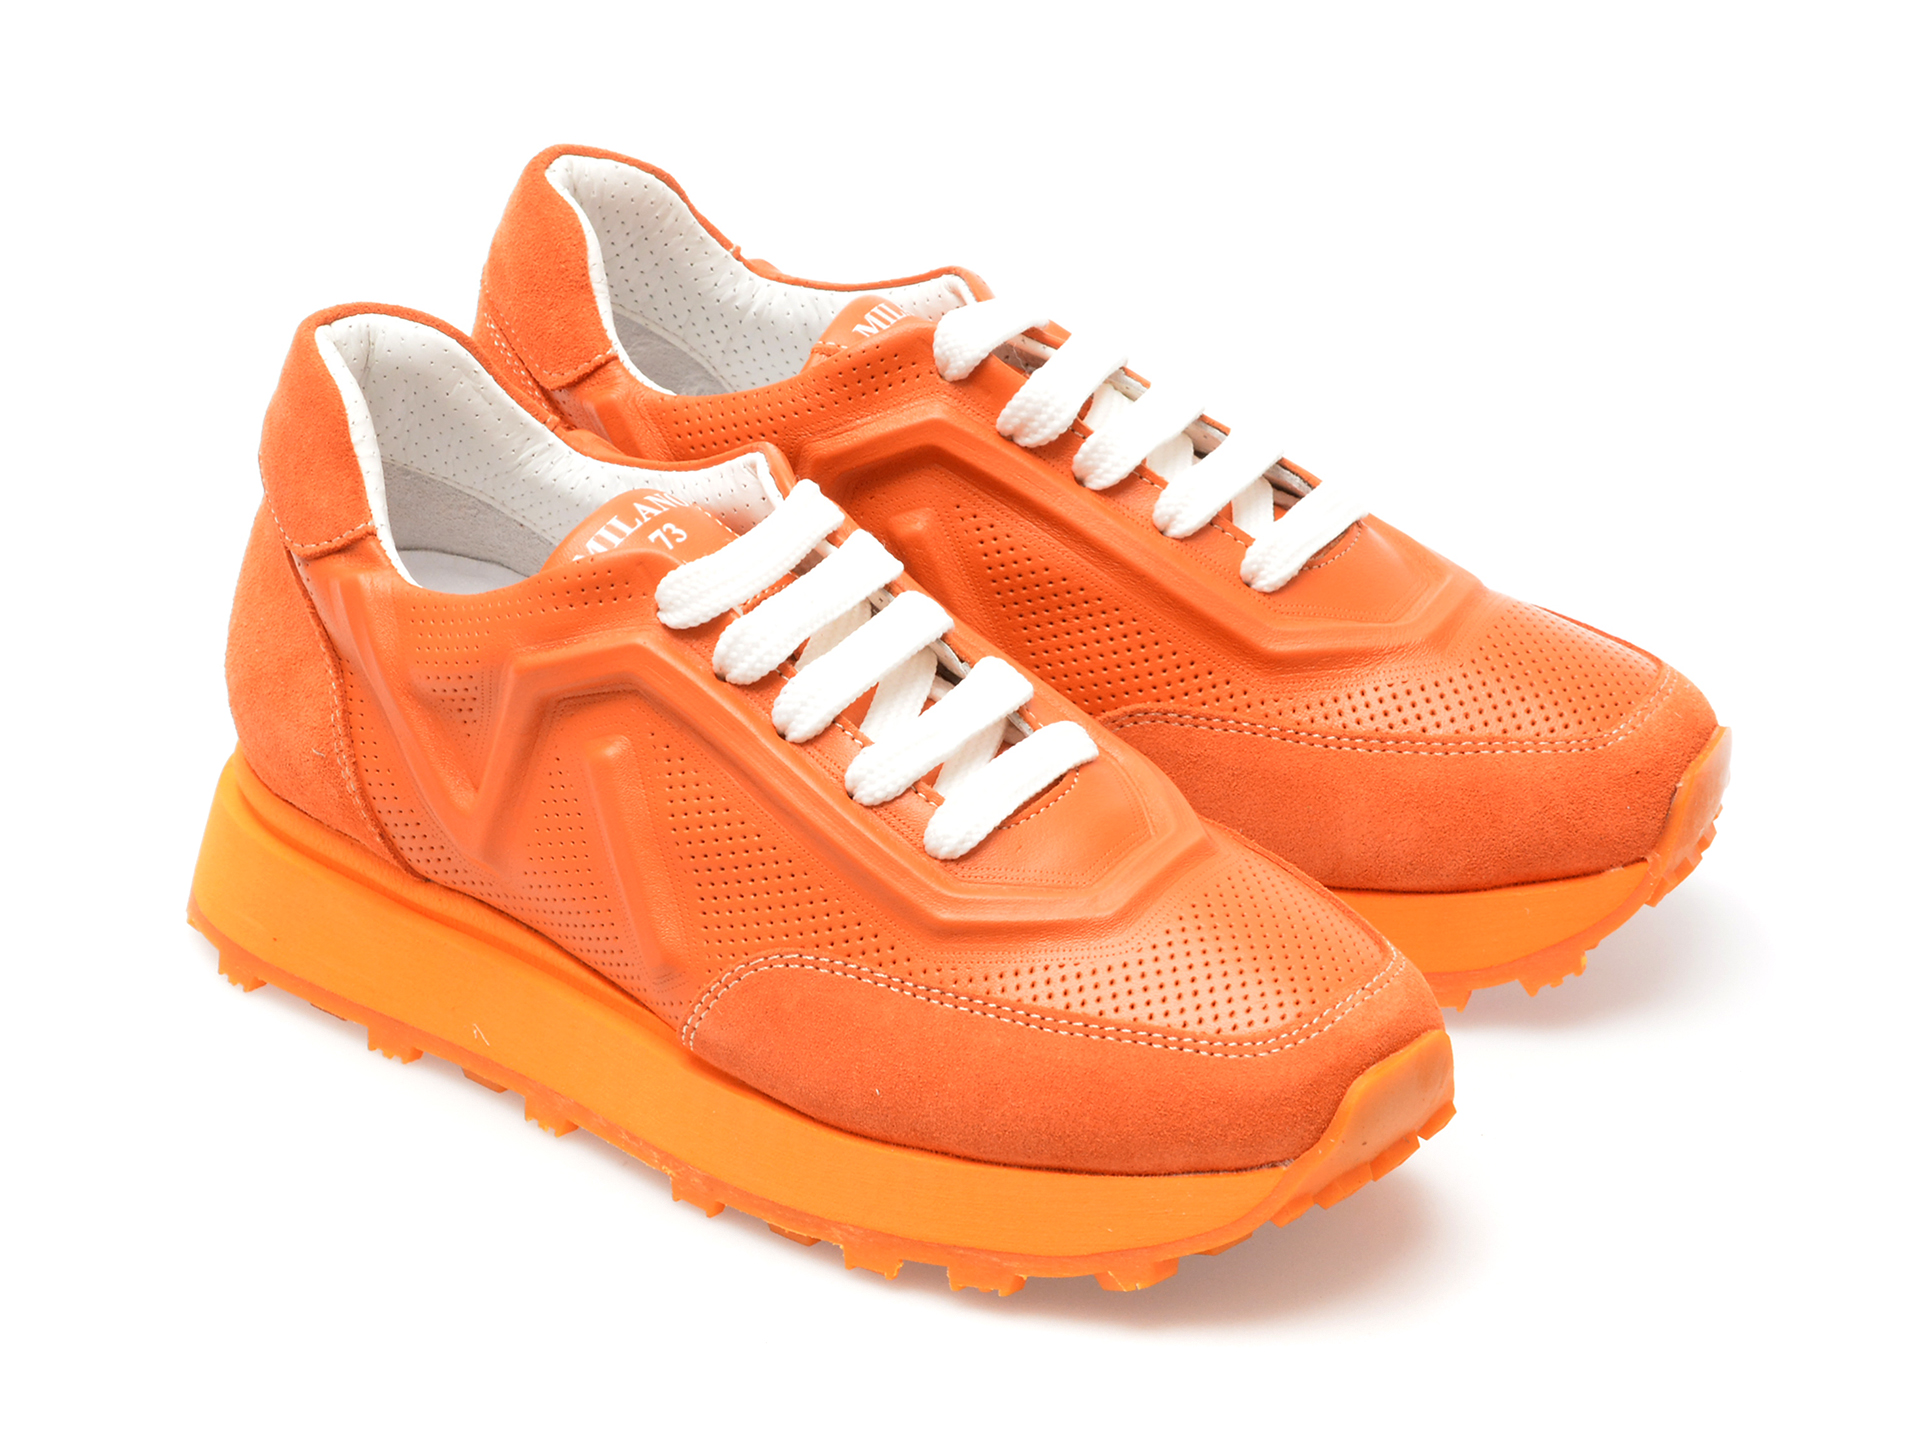 Pantofi GOLD DEER portocalii, 1187032, din piele naturala